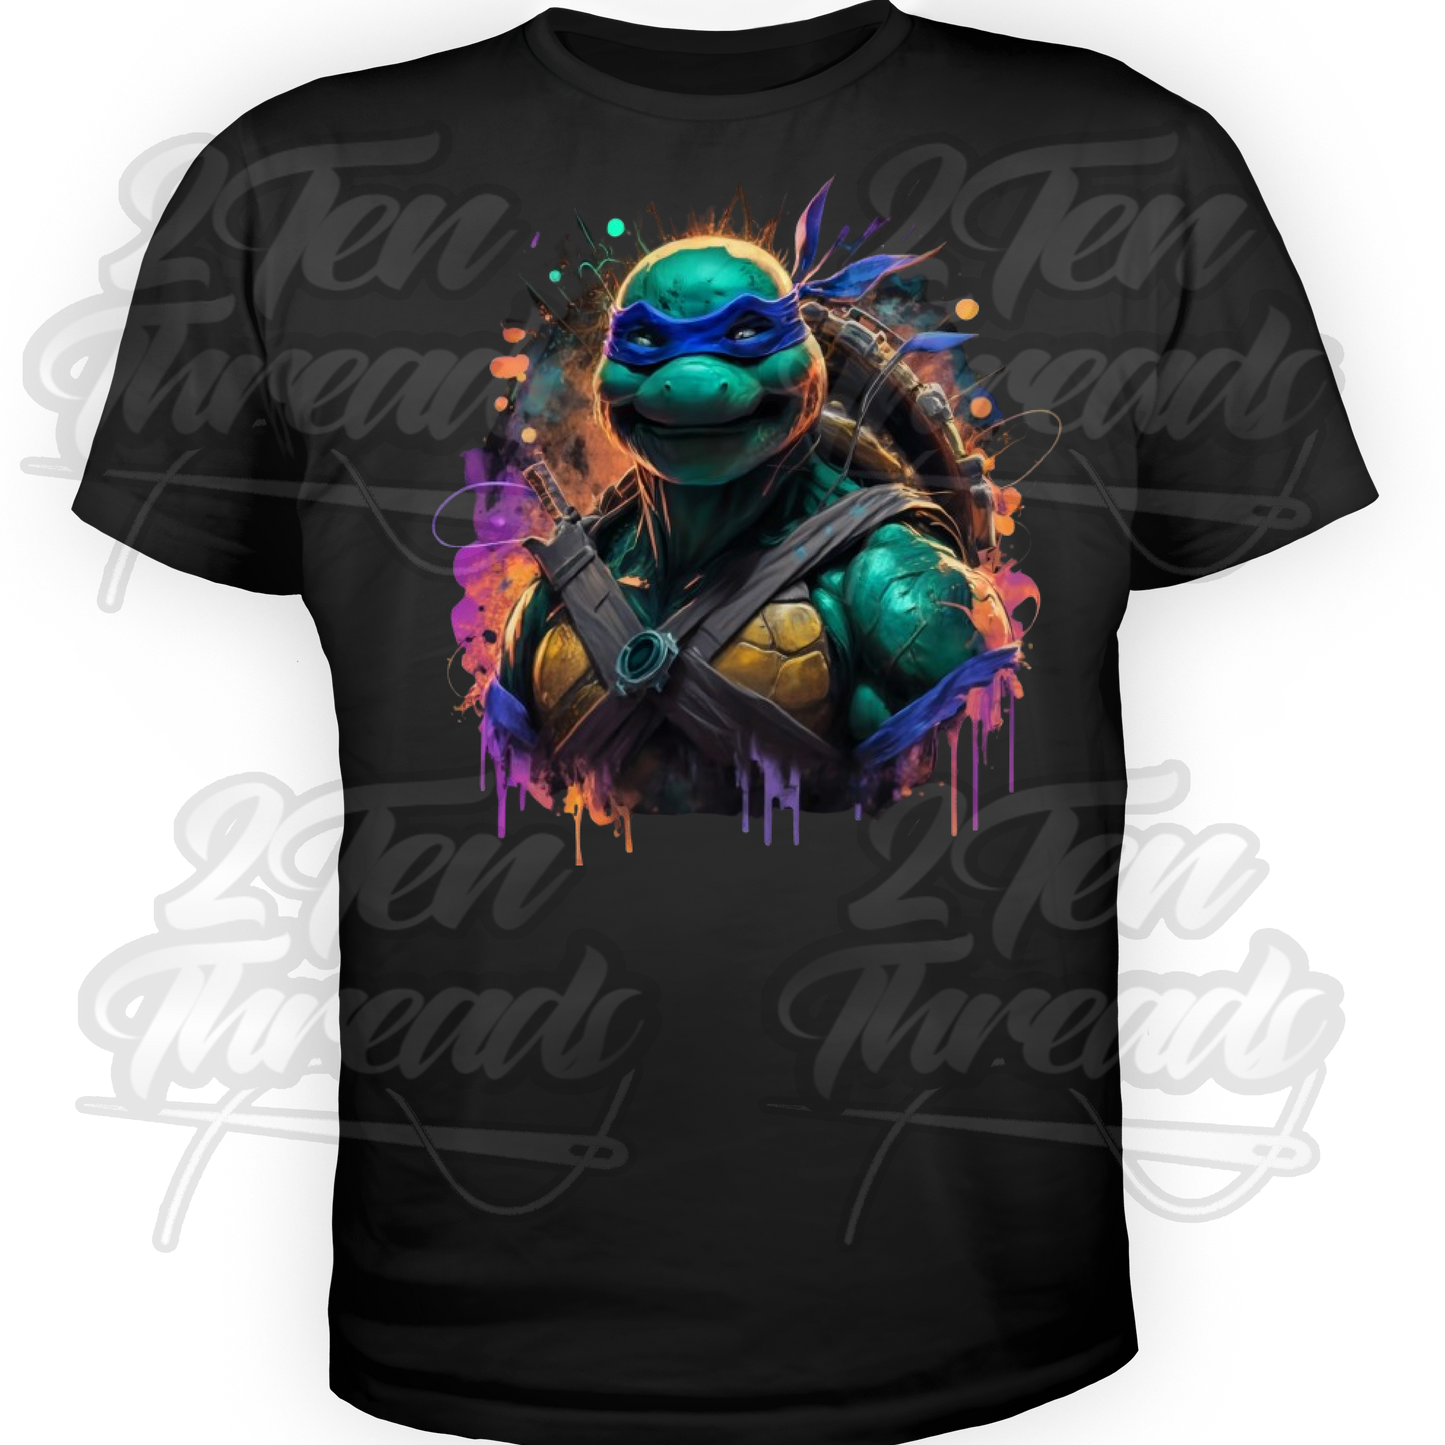 Leo - Ninja Turtles Shirt